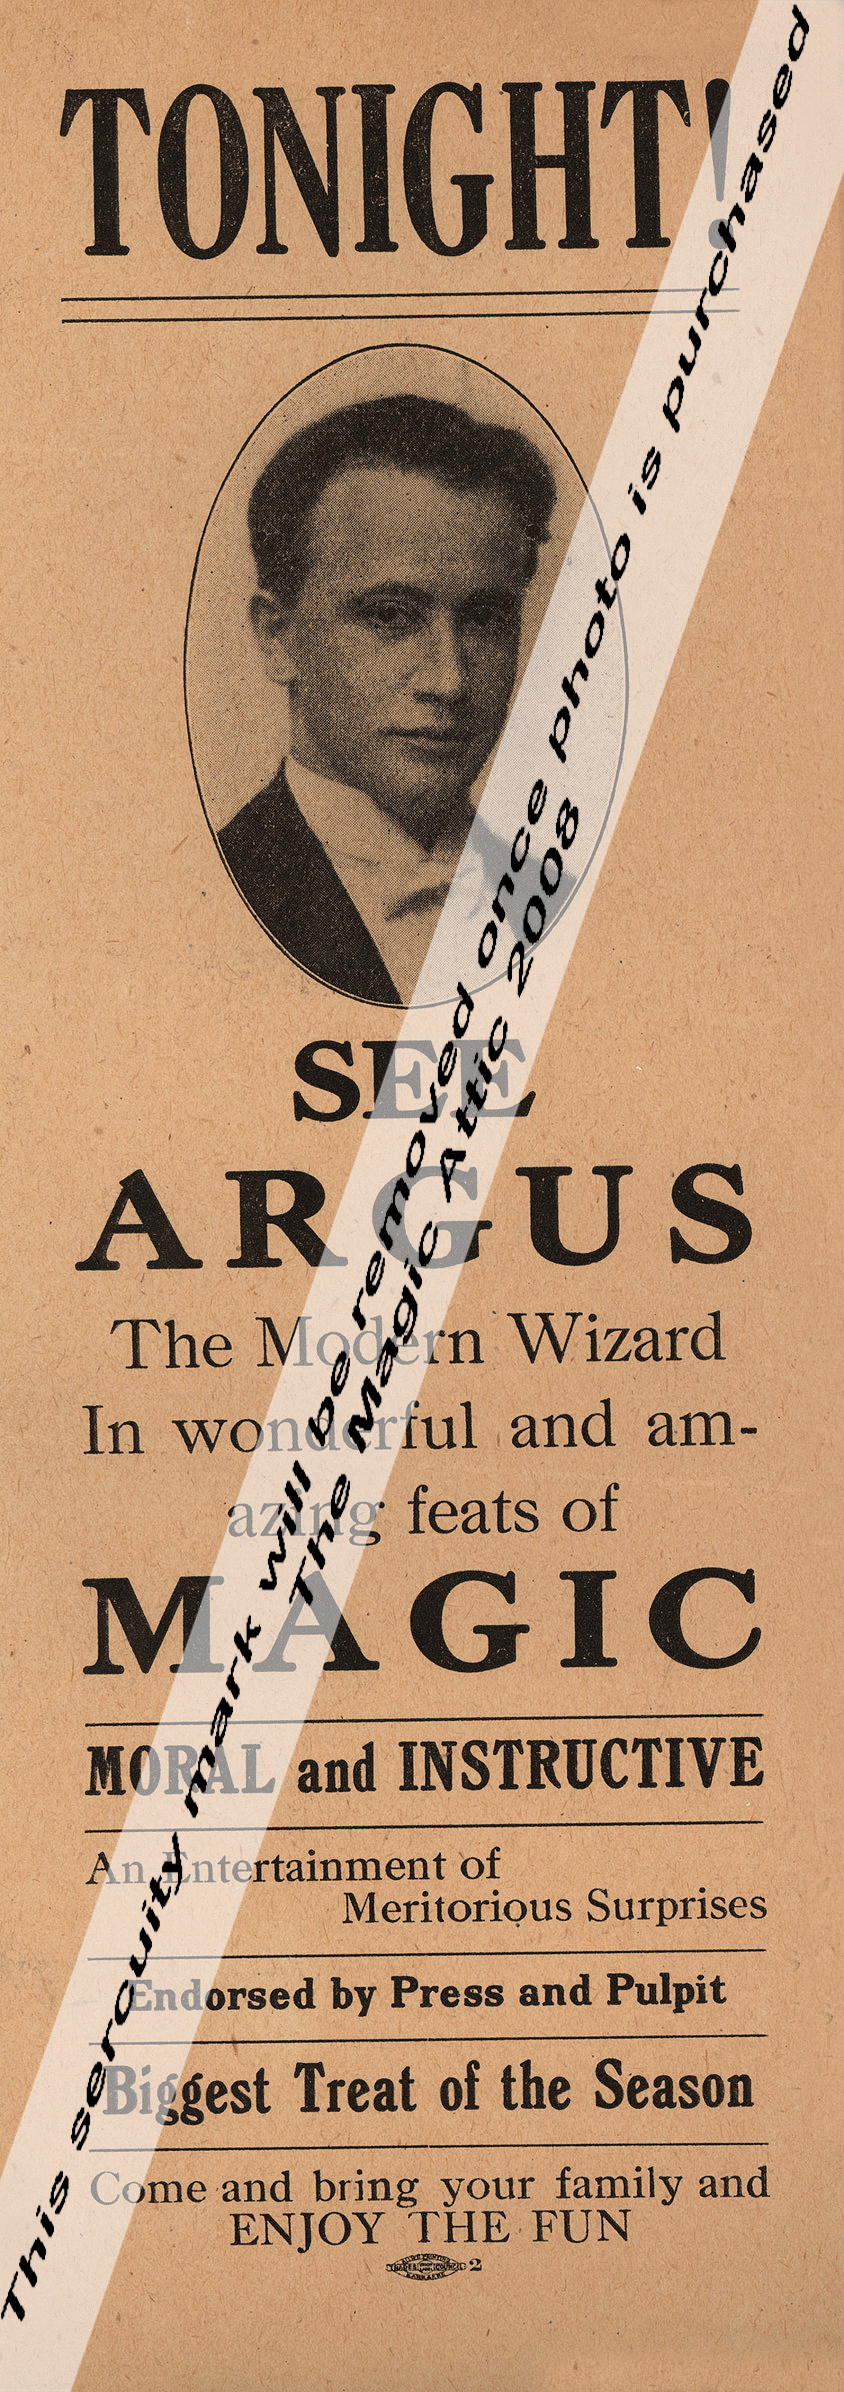 Argus - Magic